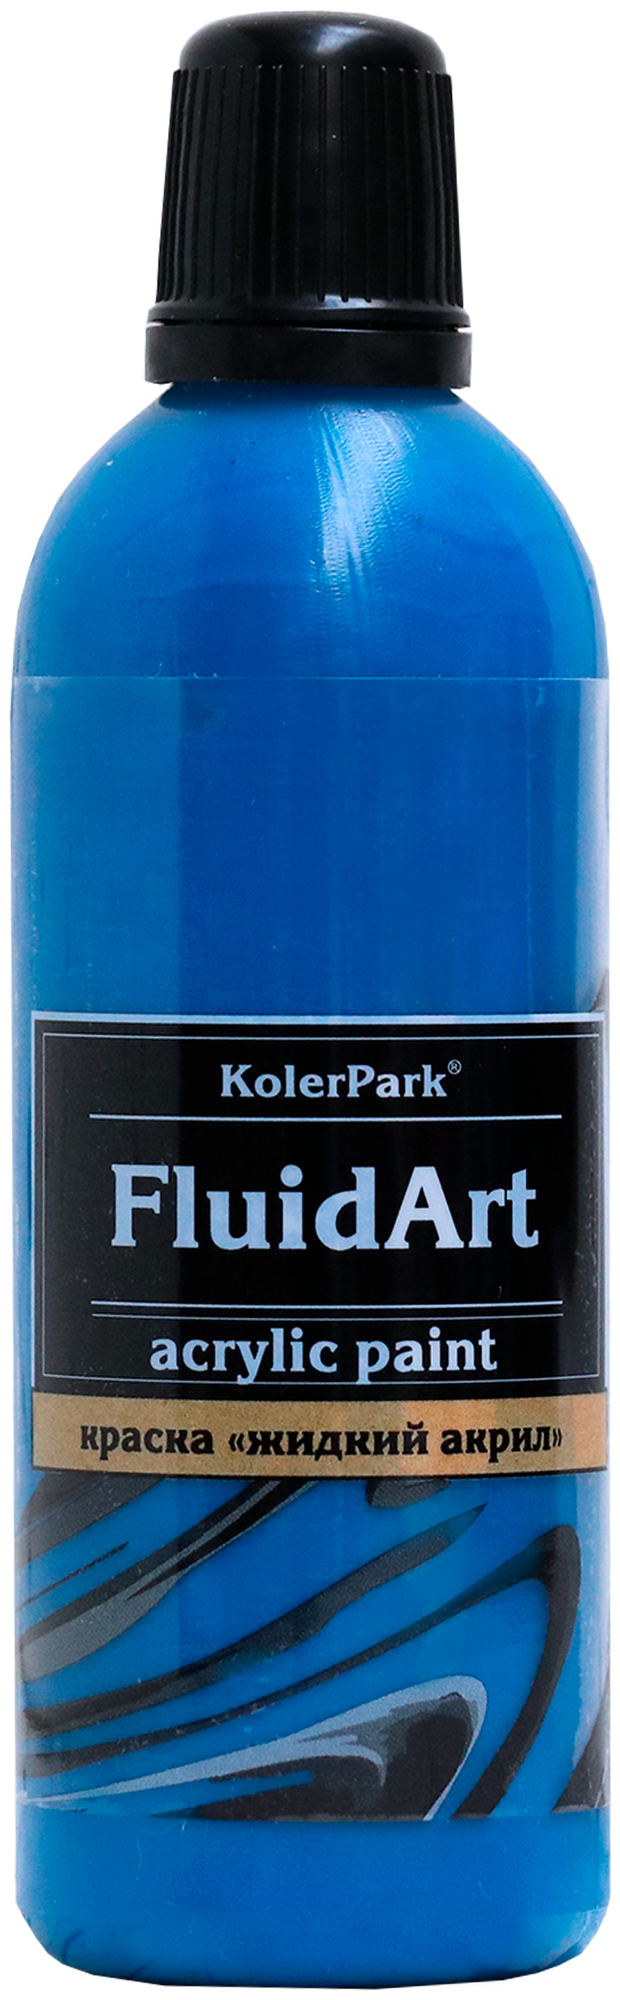 Fluid Art (жидкий акрил) 